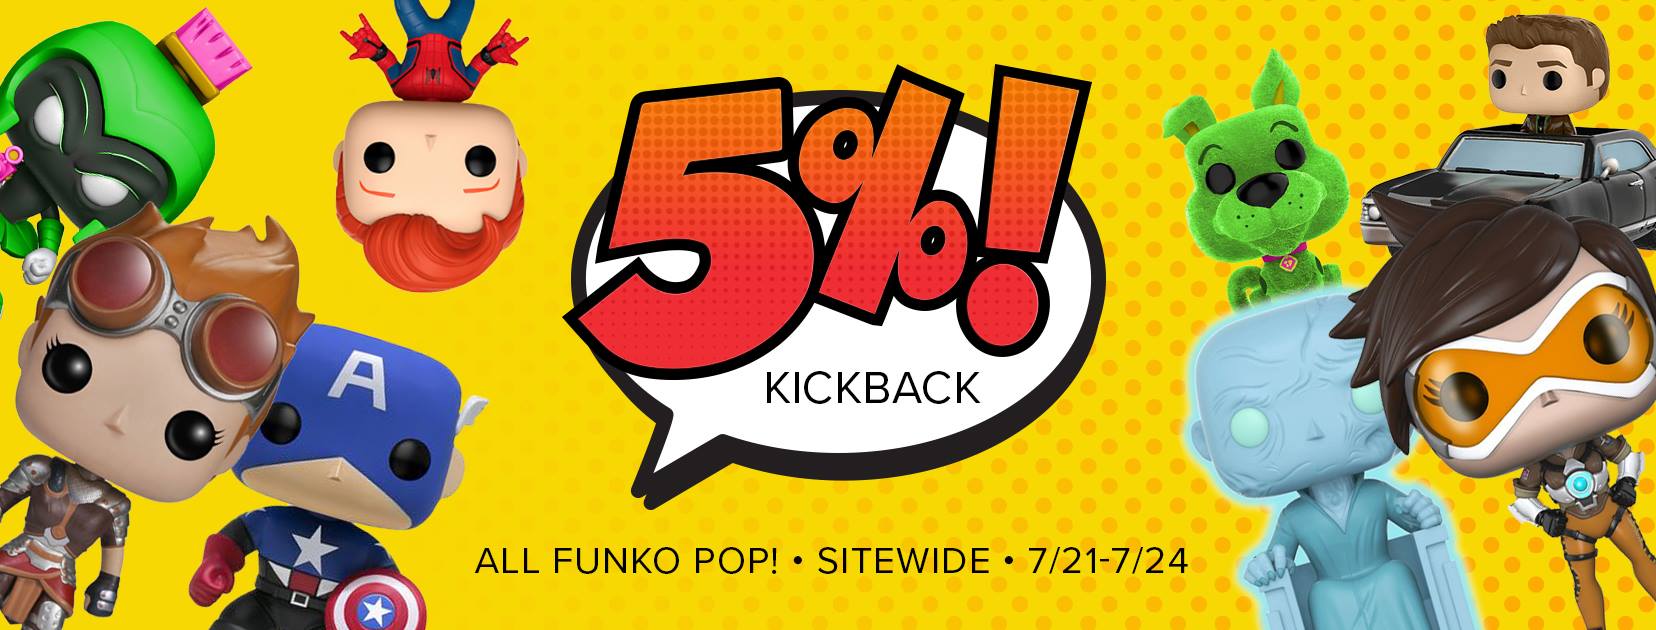 Kickback-FunkoPop.jpg